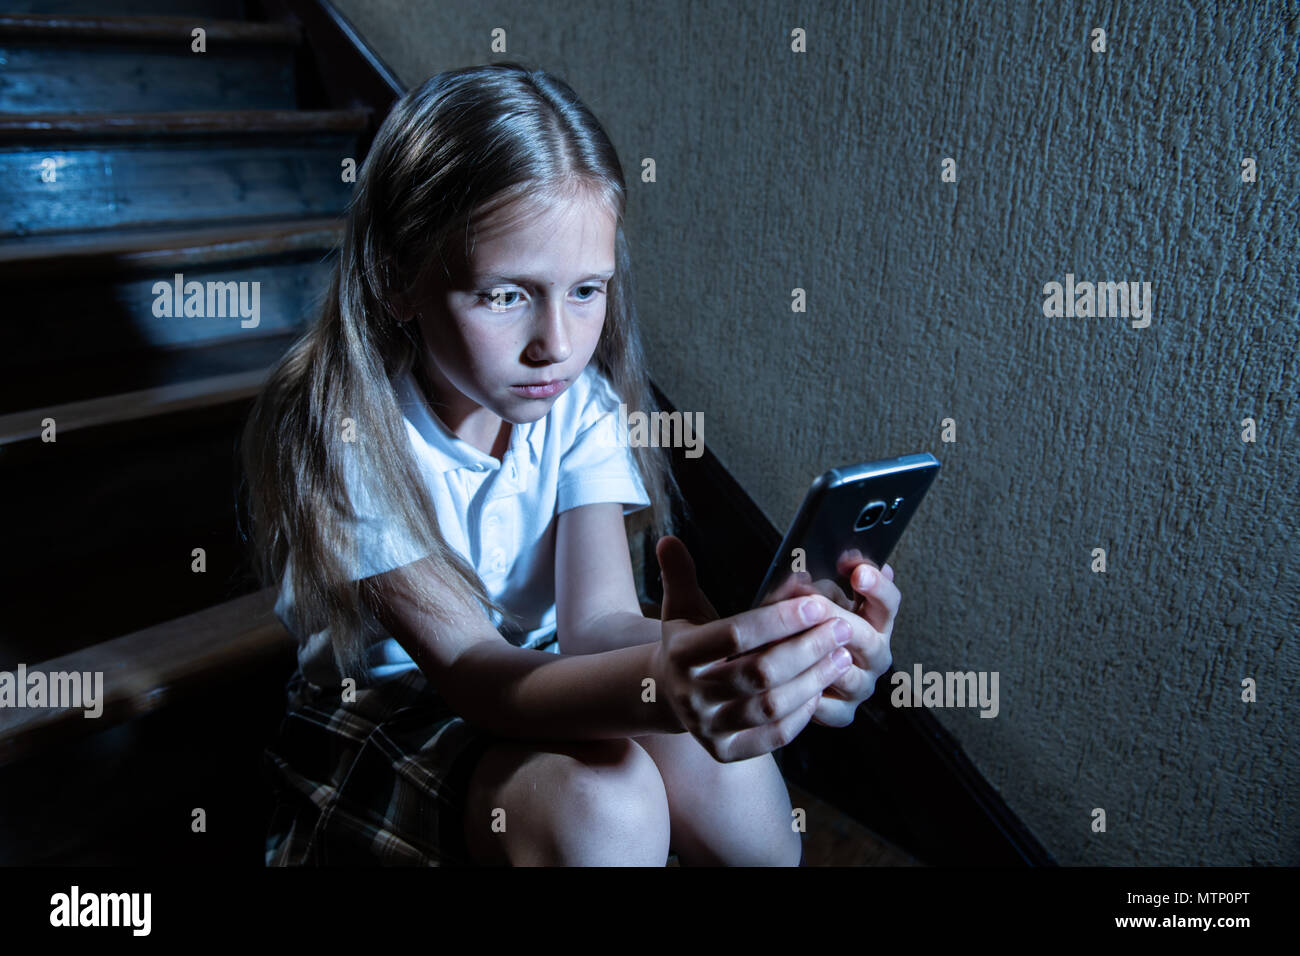 Déprimé triste jeune fille victime de cyberintimidation par smart mobile phone sitting on stairs vous sentir seul, malheureux, sans espoir et d'abus. Intimidé par texte Banque D'Images